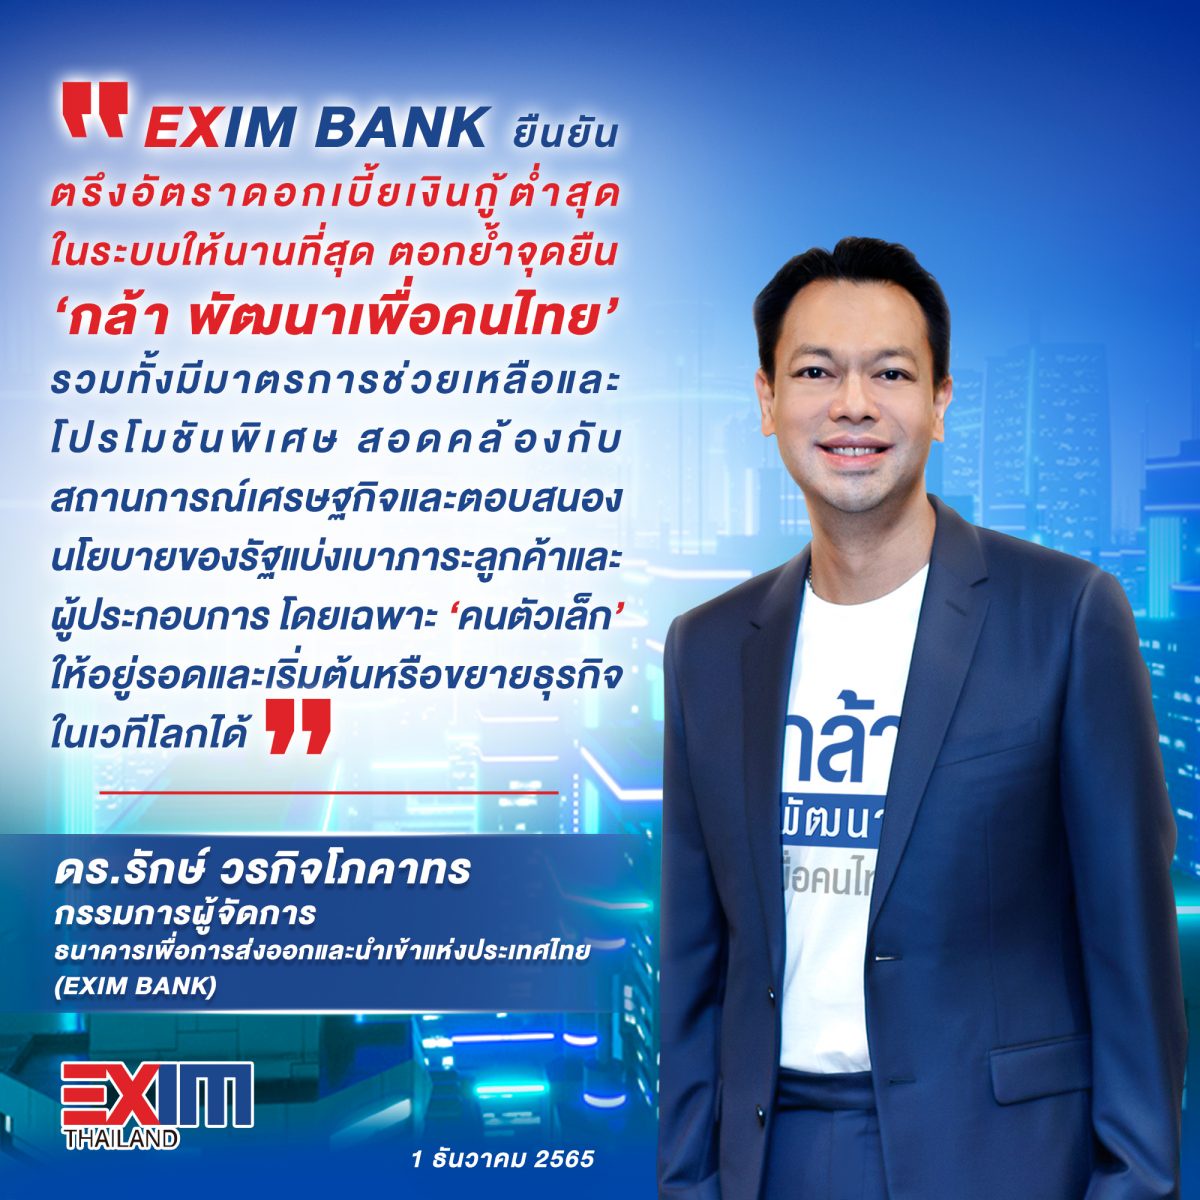 EXIM BANK ยืนยันตรึงอัตราดอกเบี้ยเงินกู้ต่ำสุดในระบบให้นานที่สุด ตอกย้ำจุดยืน กล้า พัฒนาเพื่อคนไทย